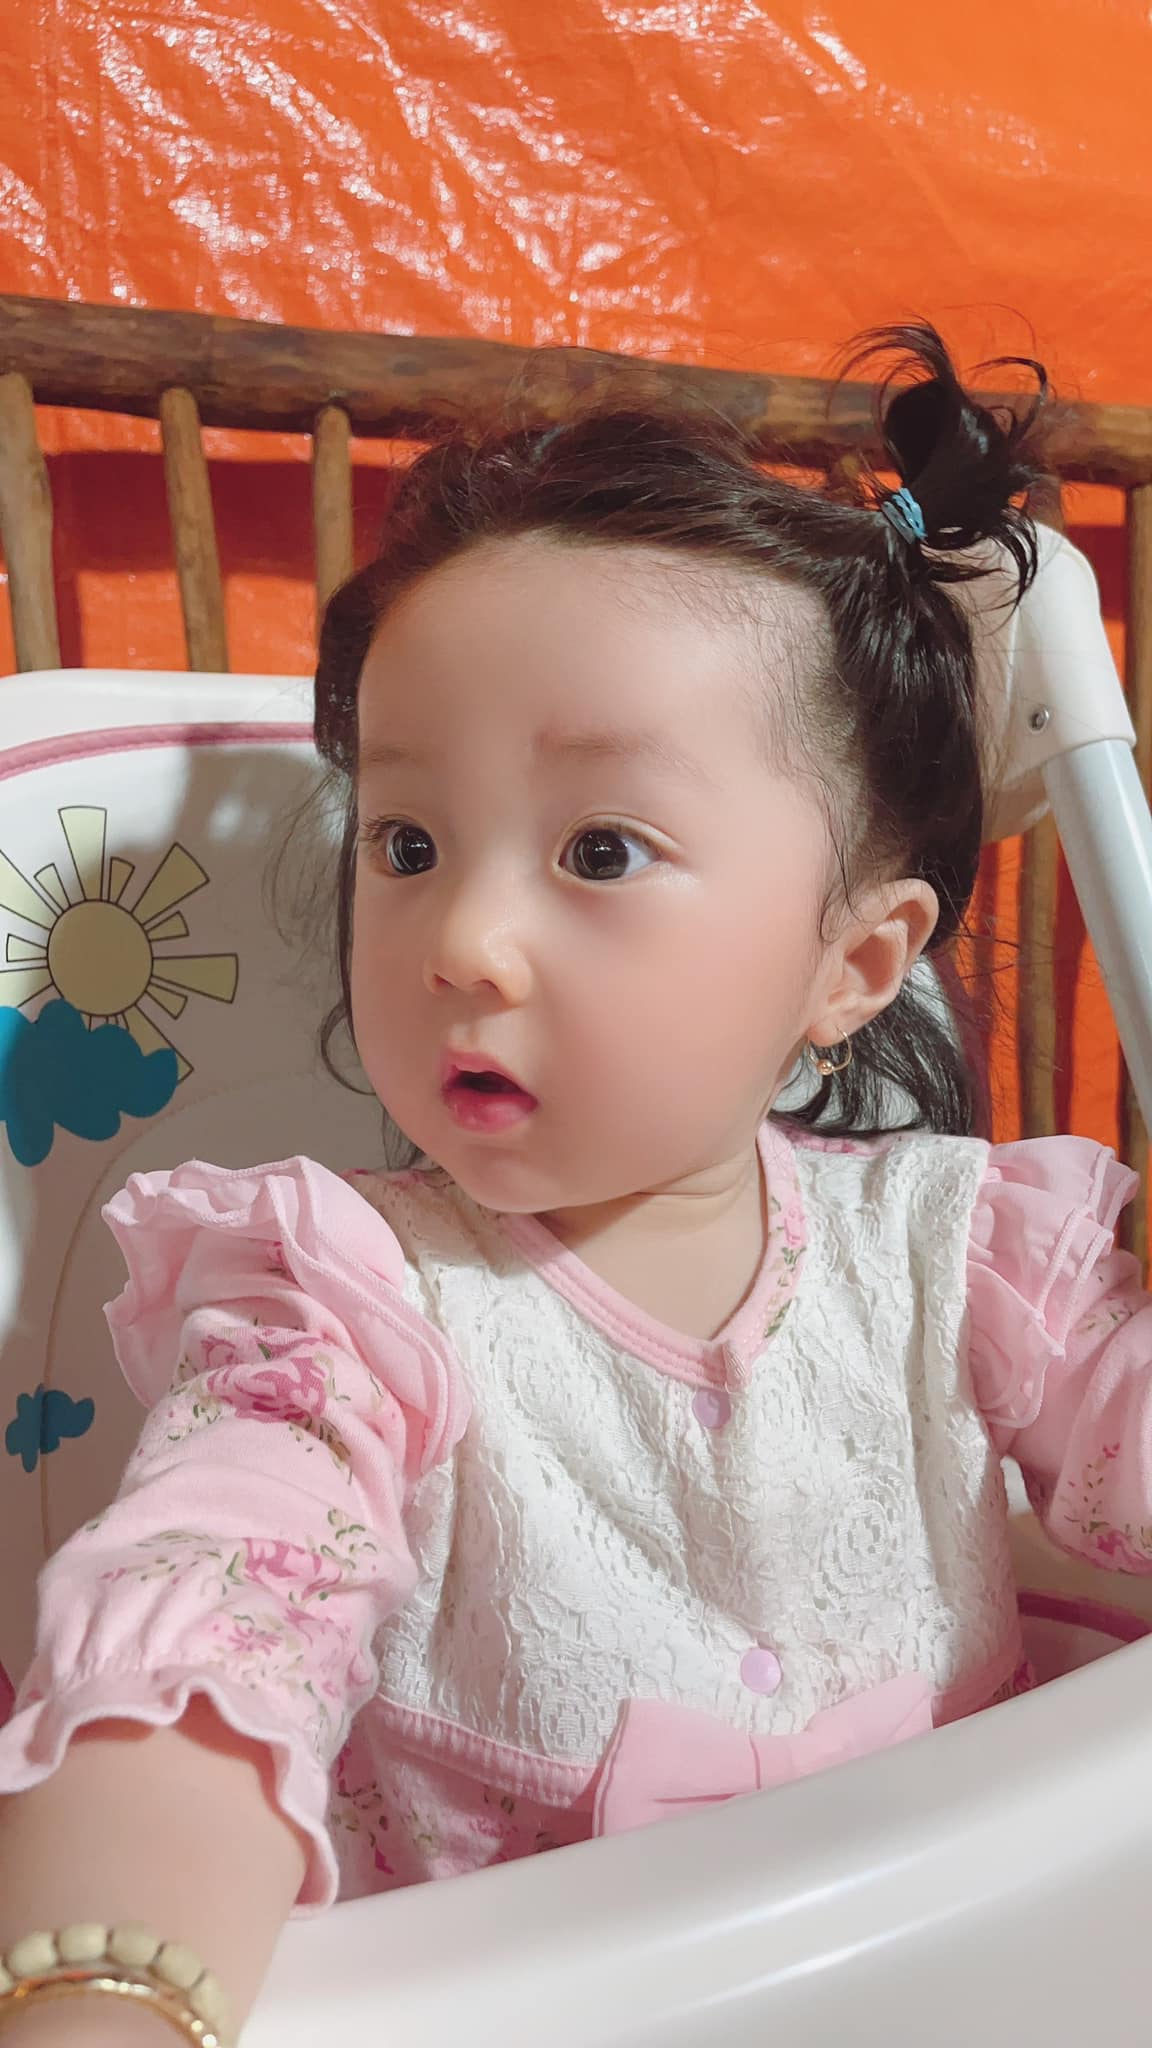 Ca sĩ Lâm Chấn Khang hé lộ thời gian con gái chào đời, thương con vì 7 tháng phải ở quê vì dịch - ảnh 4